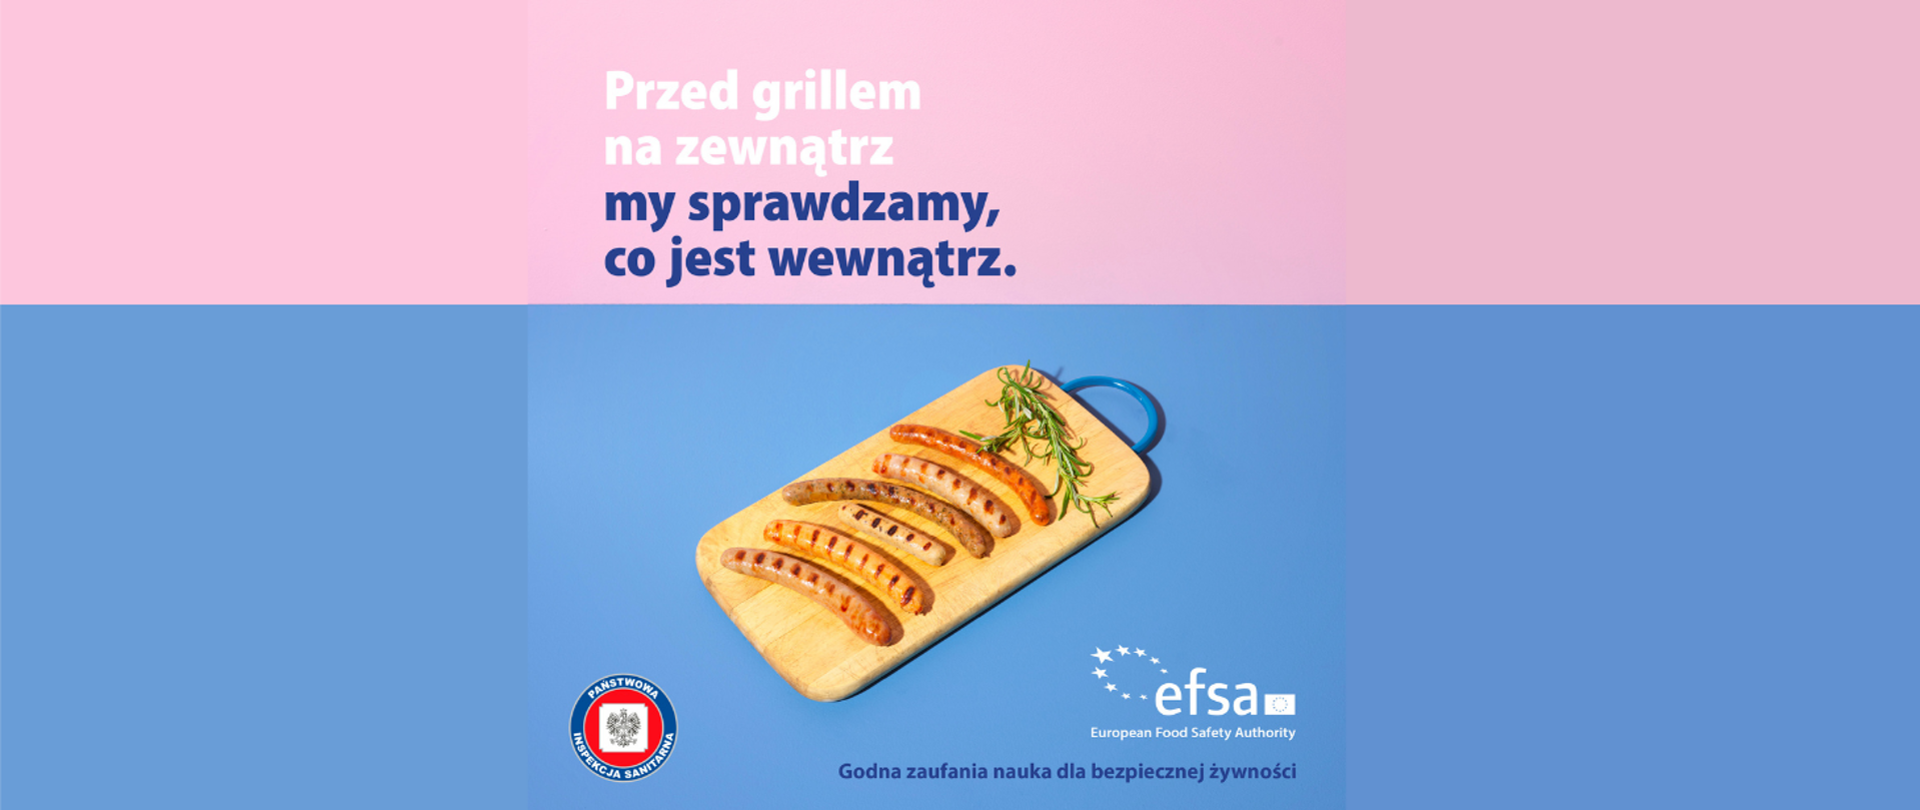 Bezpieczeństwo mięsa - deska do krojenia z ułożonymi kiełbaskami z grill'a, napis : przed grillem na zewnątrz sprawdzamy co jest wewnątrz. Logo EFSA i SANEPID